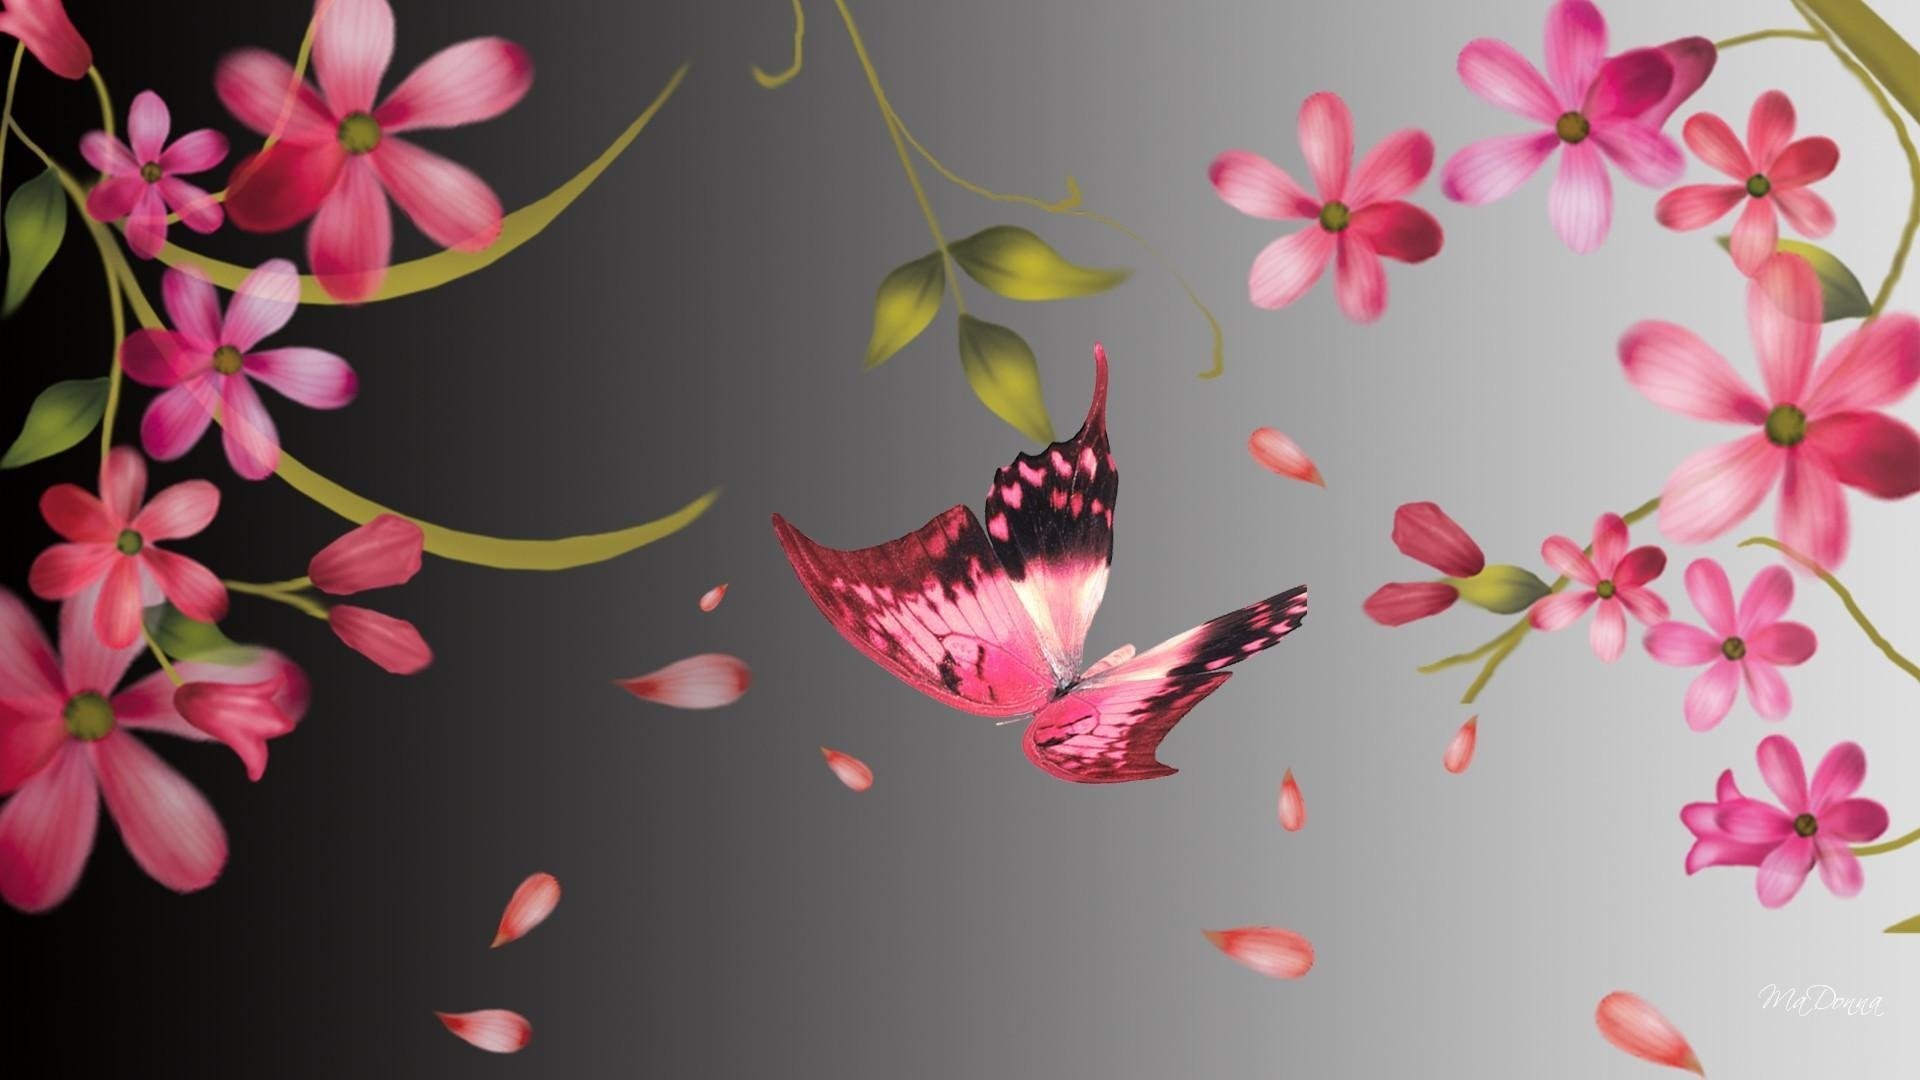 Butterfly wallpaper hd